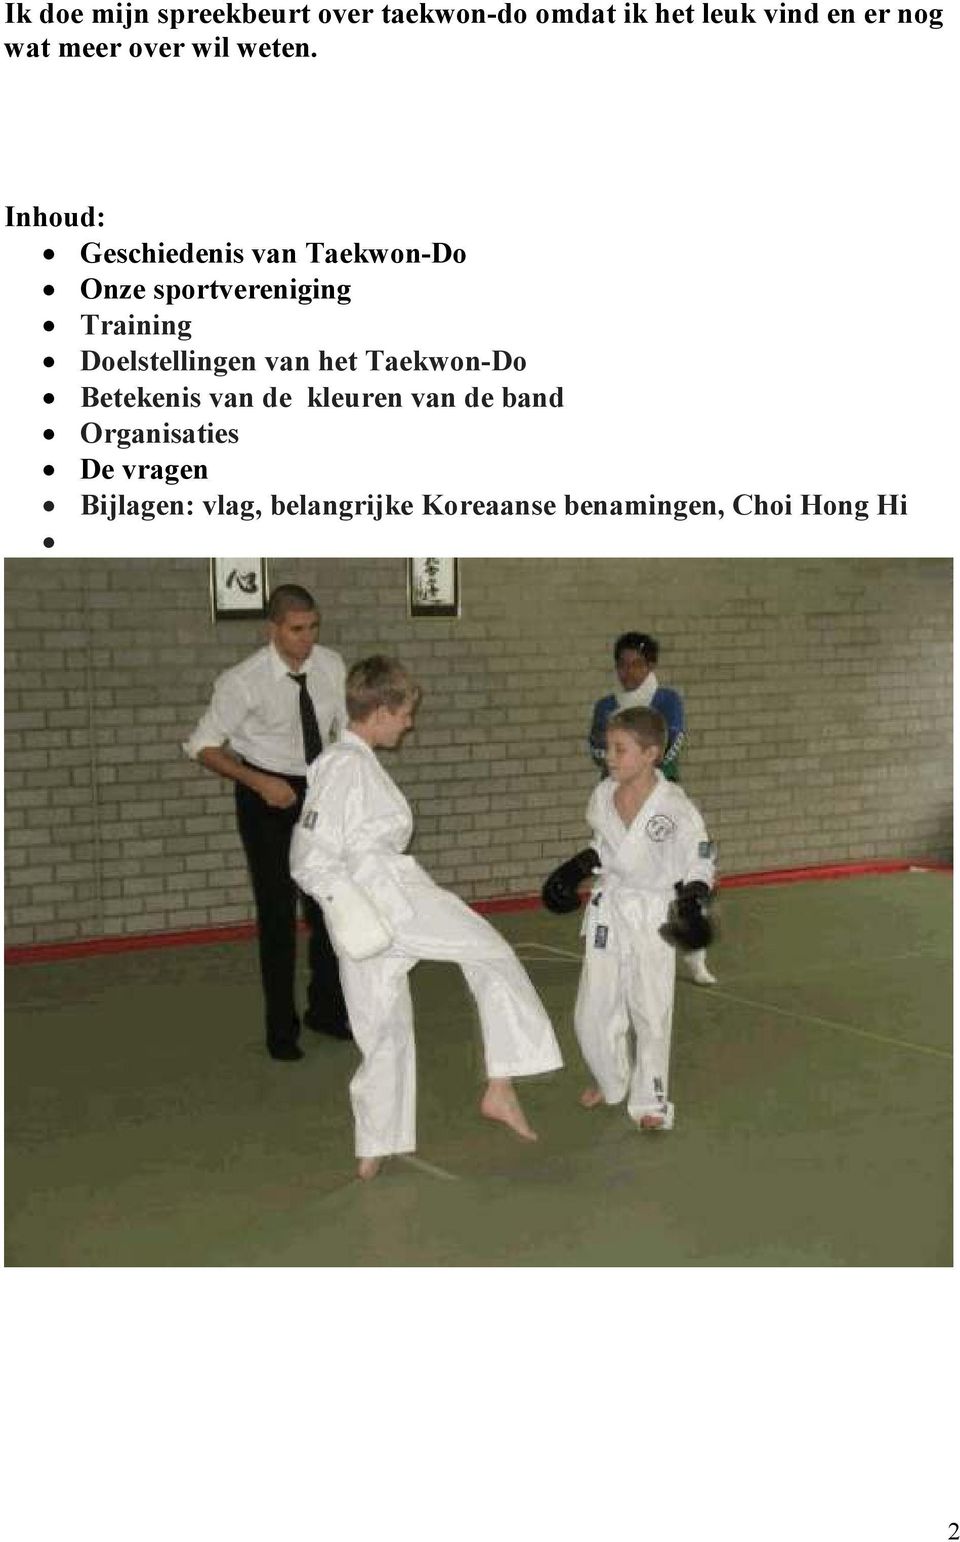 Inhoud: Geschiedenis van Taekwon-Do Onze sportvereniging Training Doelstellingen